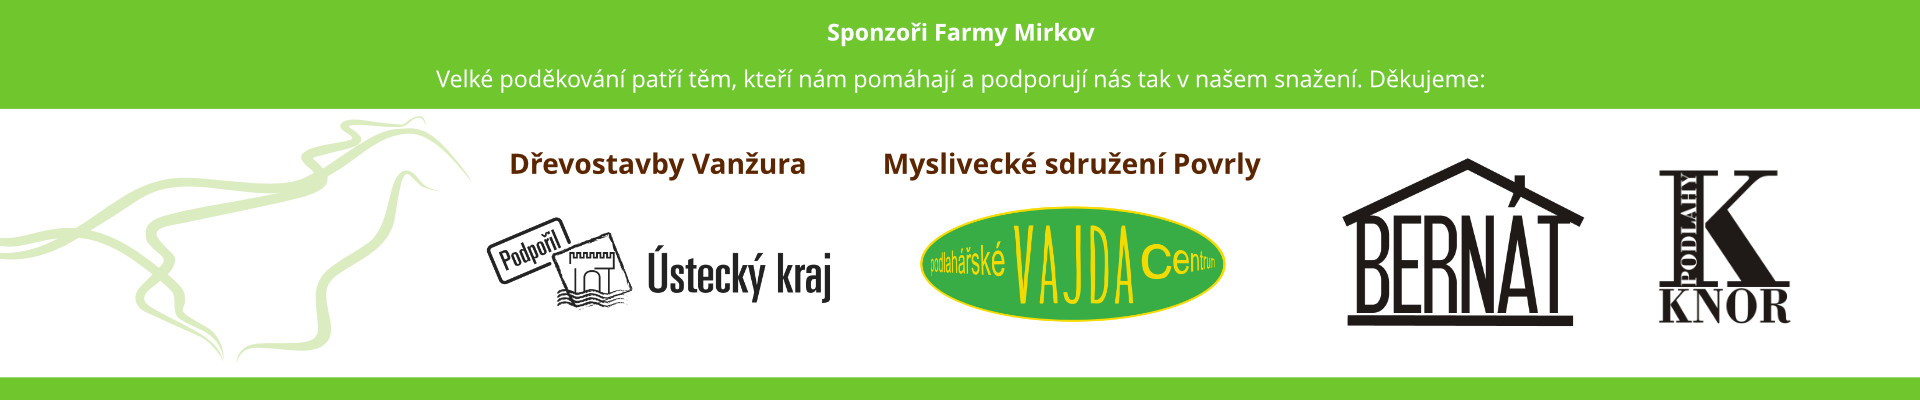 Sponzoři Farmy Mirkov